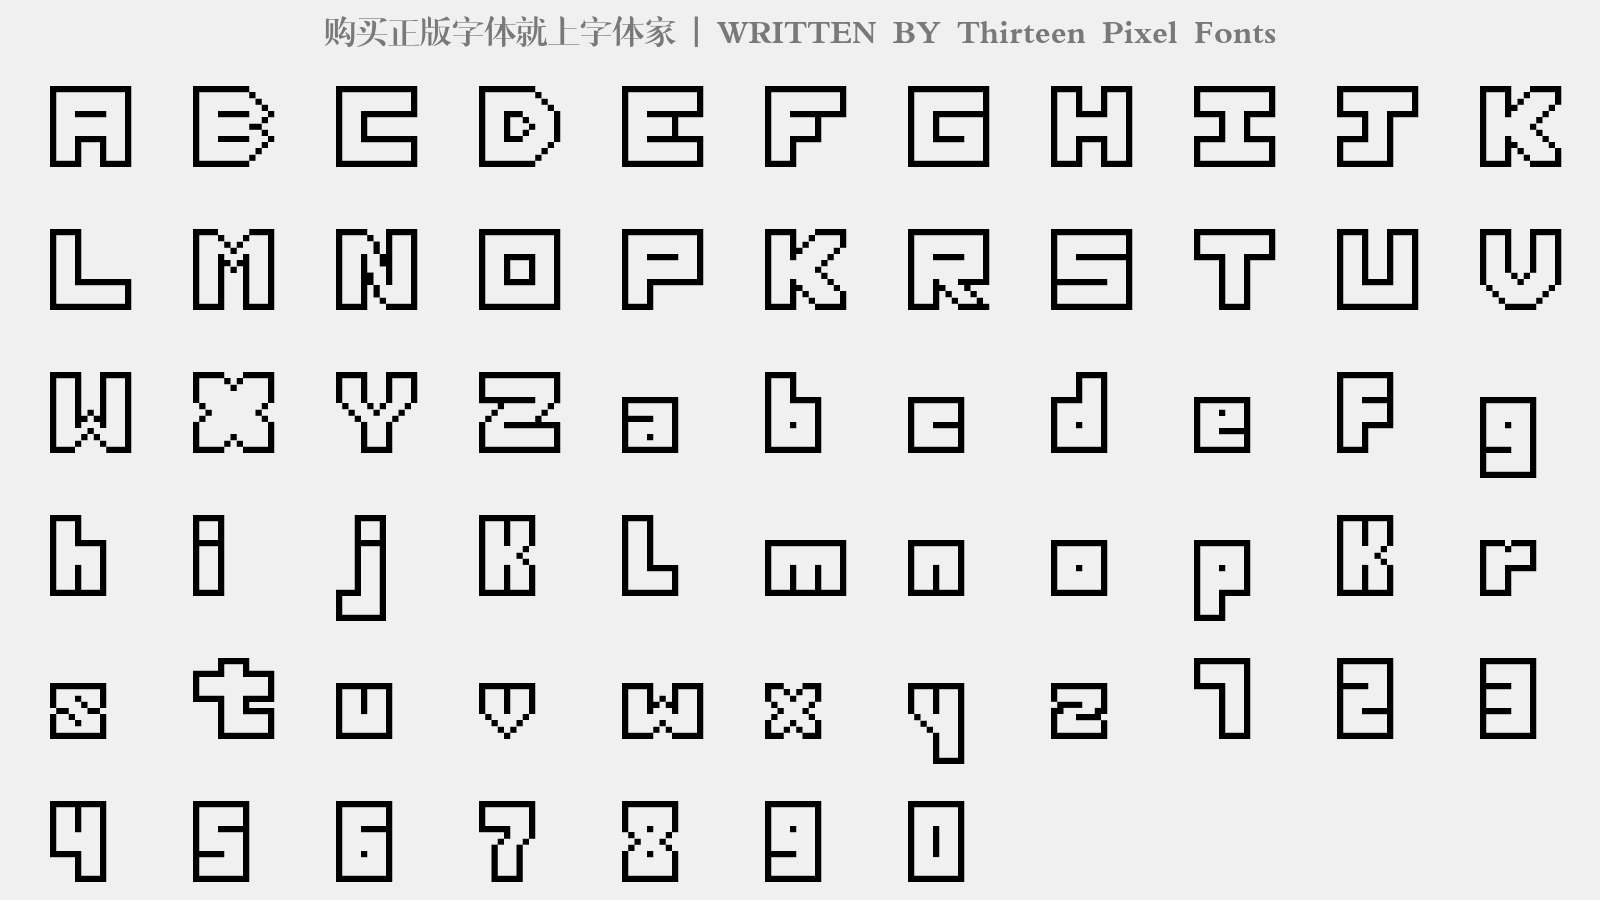 Thirteen Pixel Fonts - 大写字母/小写字母/数字